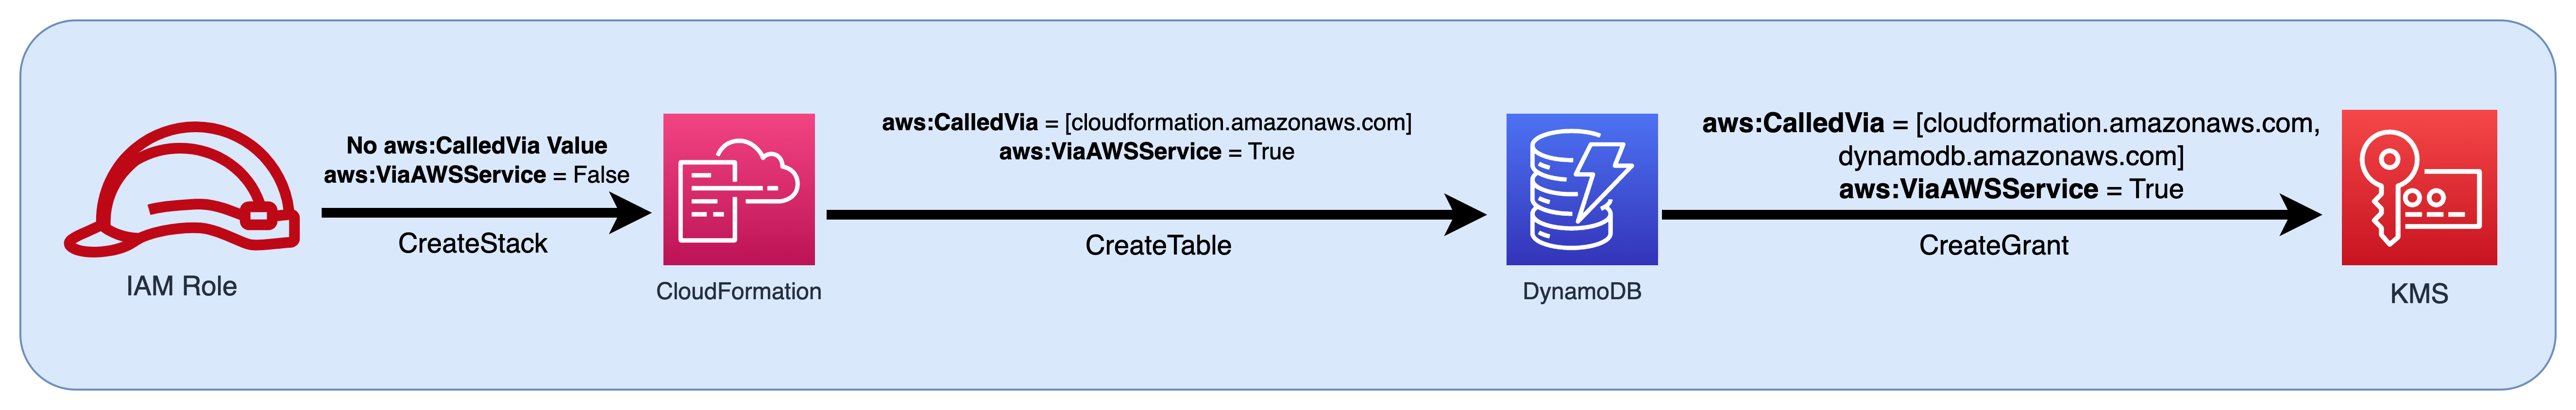 将 IAM 角色作为主体传递给 CloudFormation，然后将条件键值传递给 DynamoDB 和 AWS KMS 的流程图。